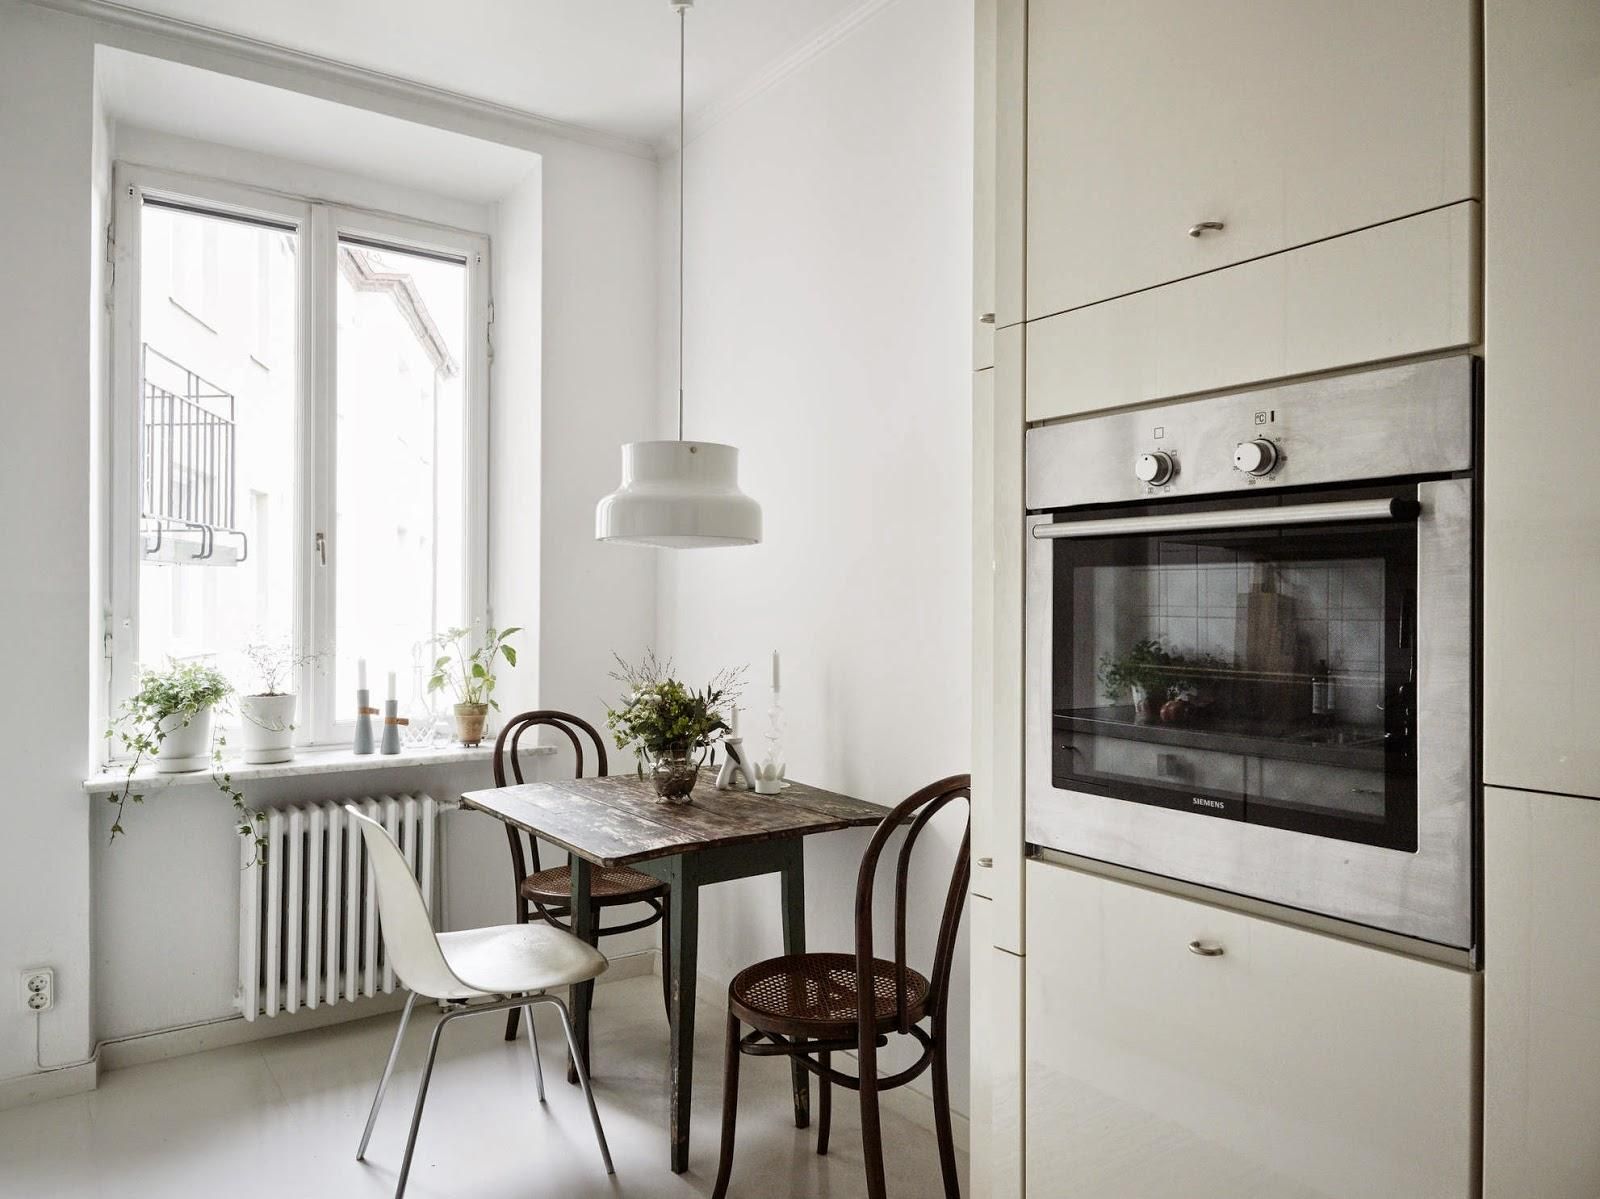 Однокомнатная квартира с кухней в скандинавском стиле